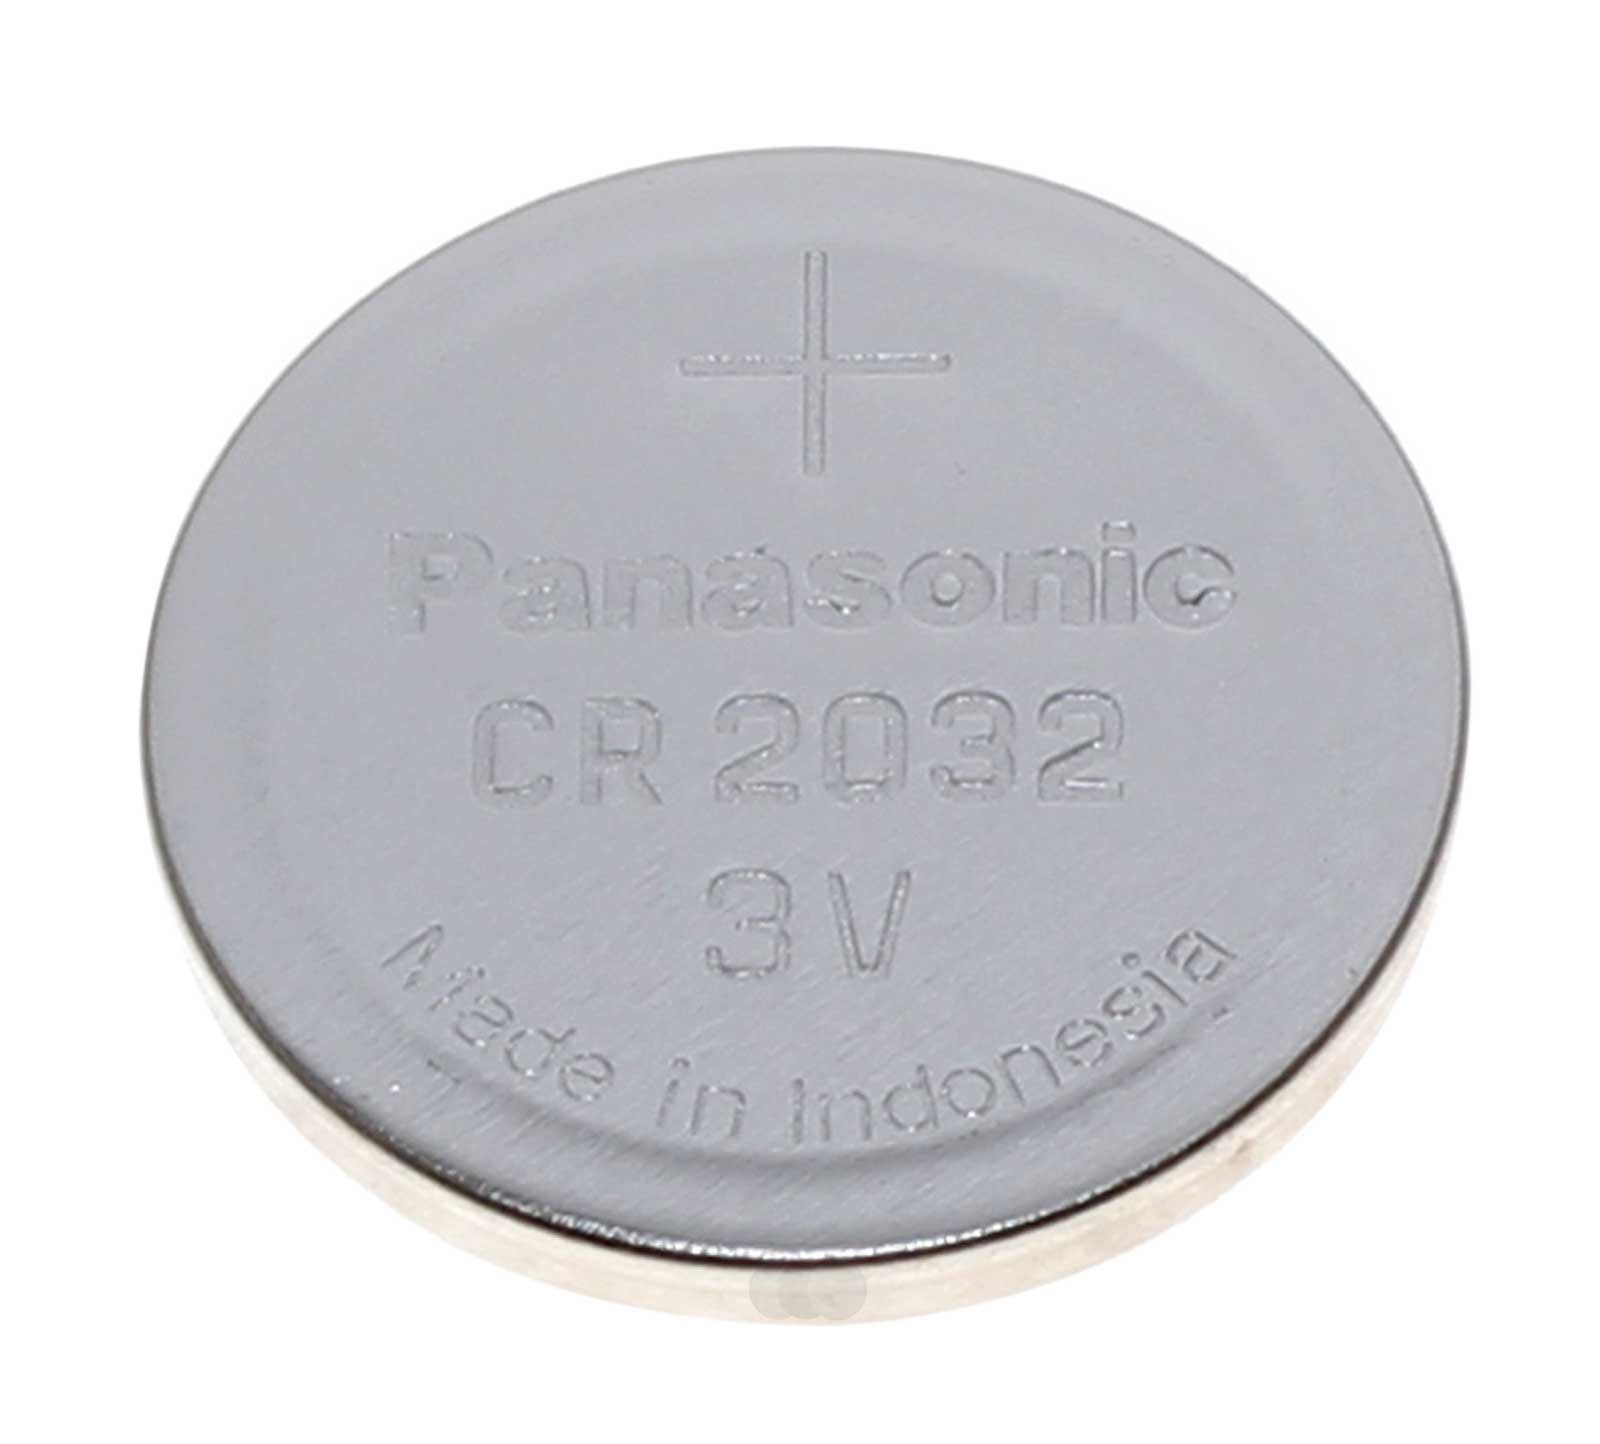 Panasonic CR2032 Lithium Knopfzelle, Batterie für Golf 5 Autoschlüssel-Funksender mit 3 Volt und 220mAh Kapazität